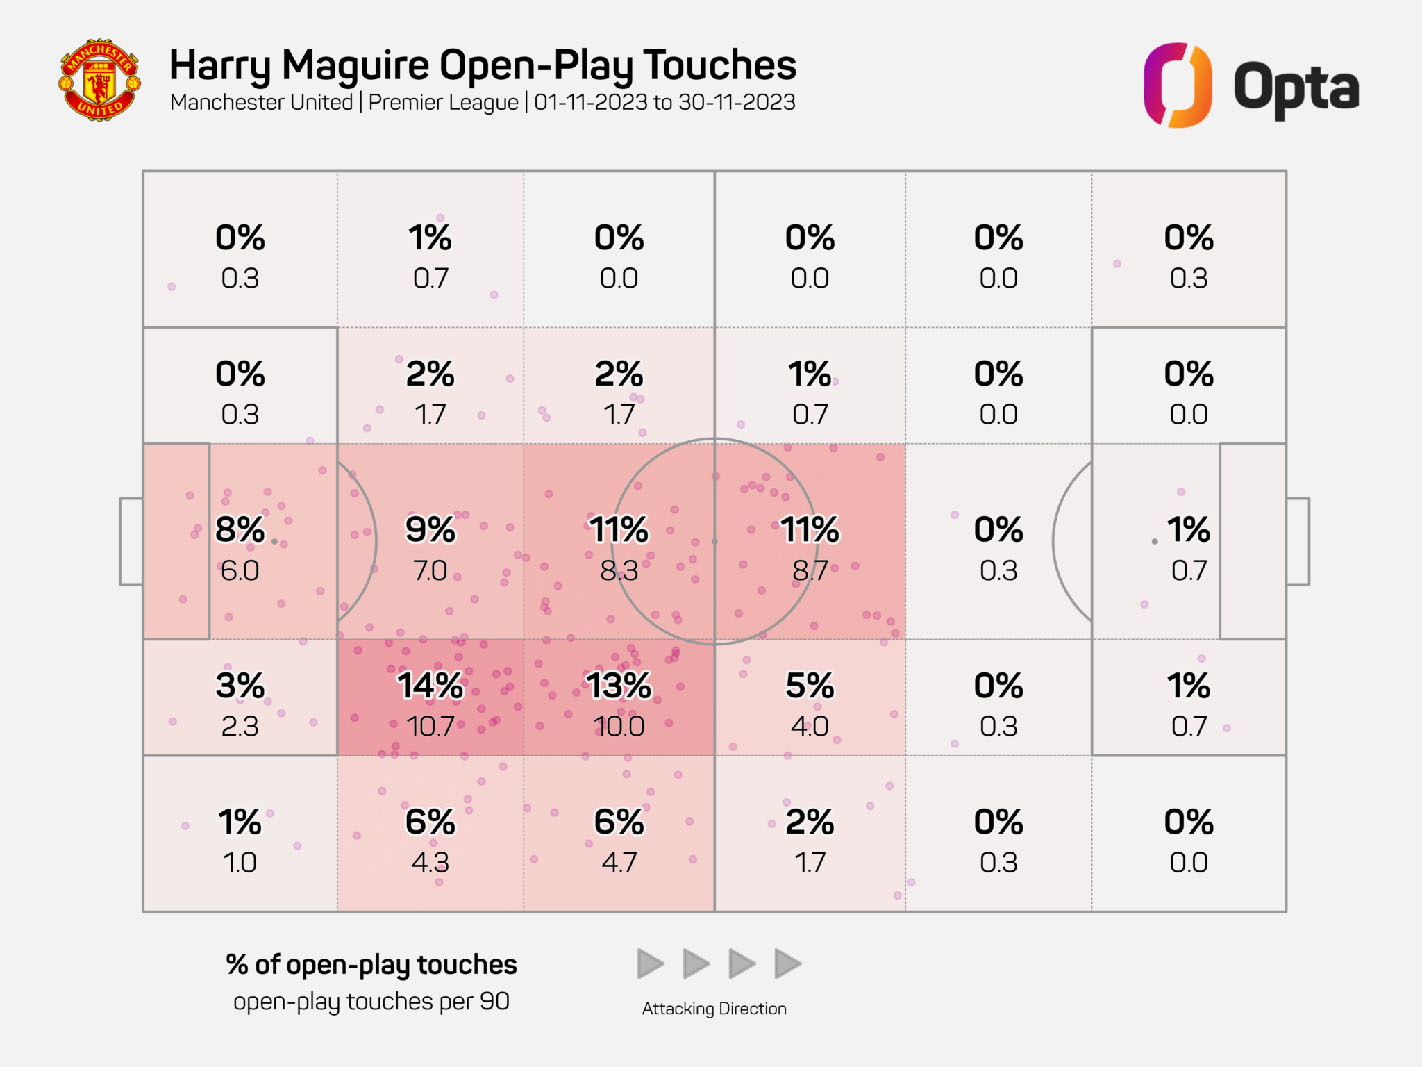 Không gian chơi và tỉ lệ các điểm chạm bóng của Harry Maguire trong tháng 11. Ảnh: Opta